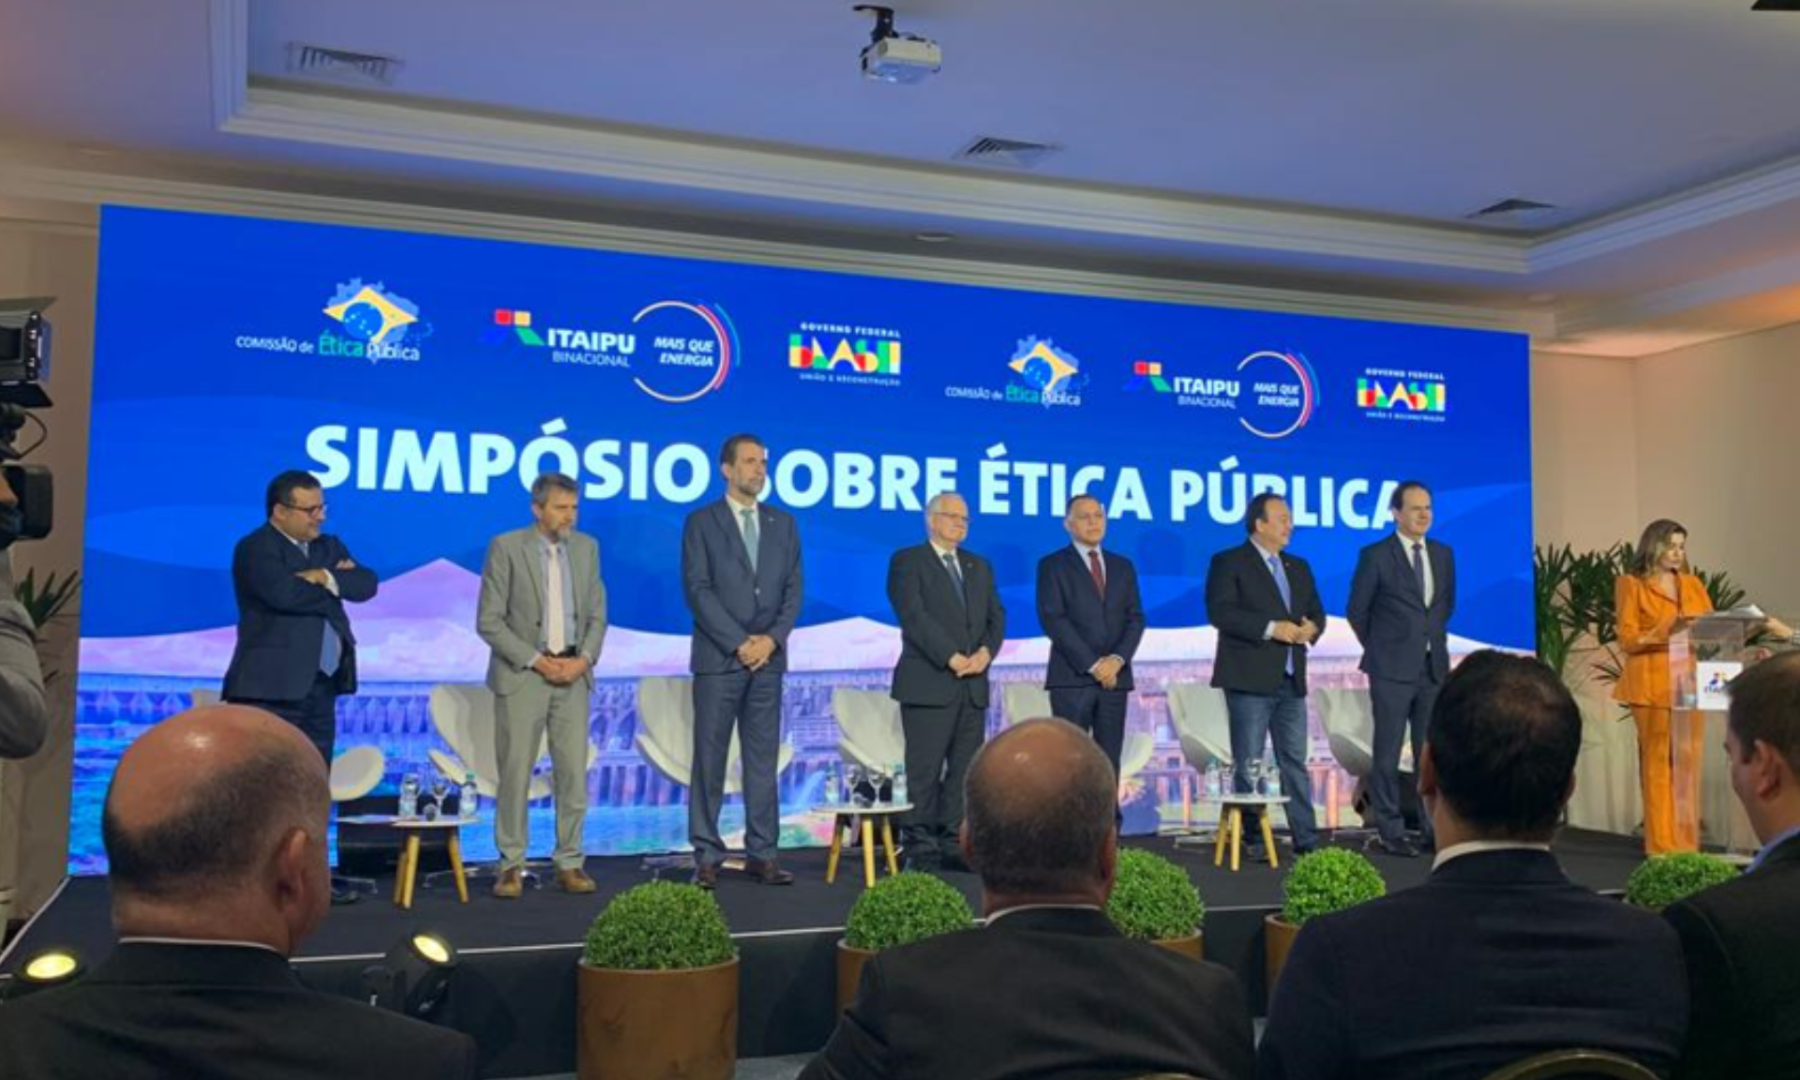 Comissão de Ética Pública e Itaipu Binacional assinam Protocolo de Intenções sobre ética pública